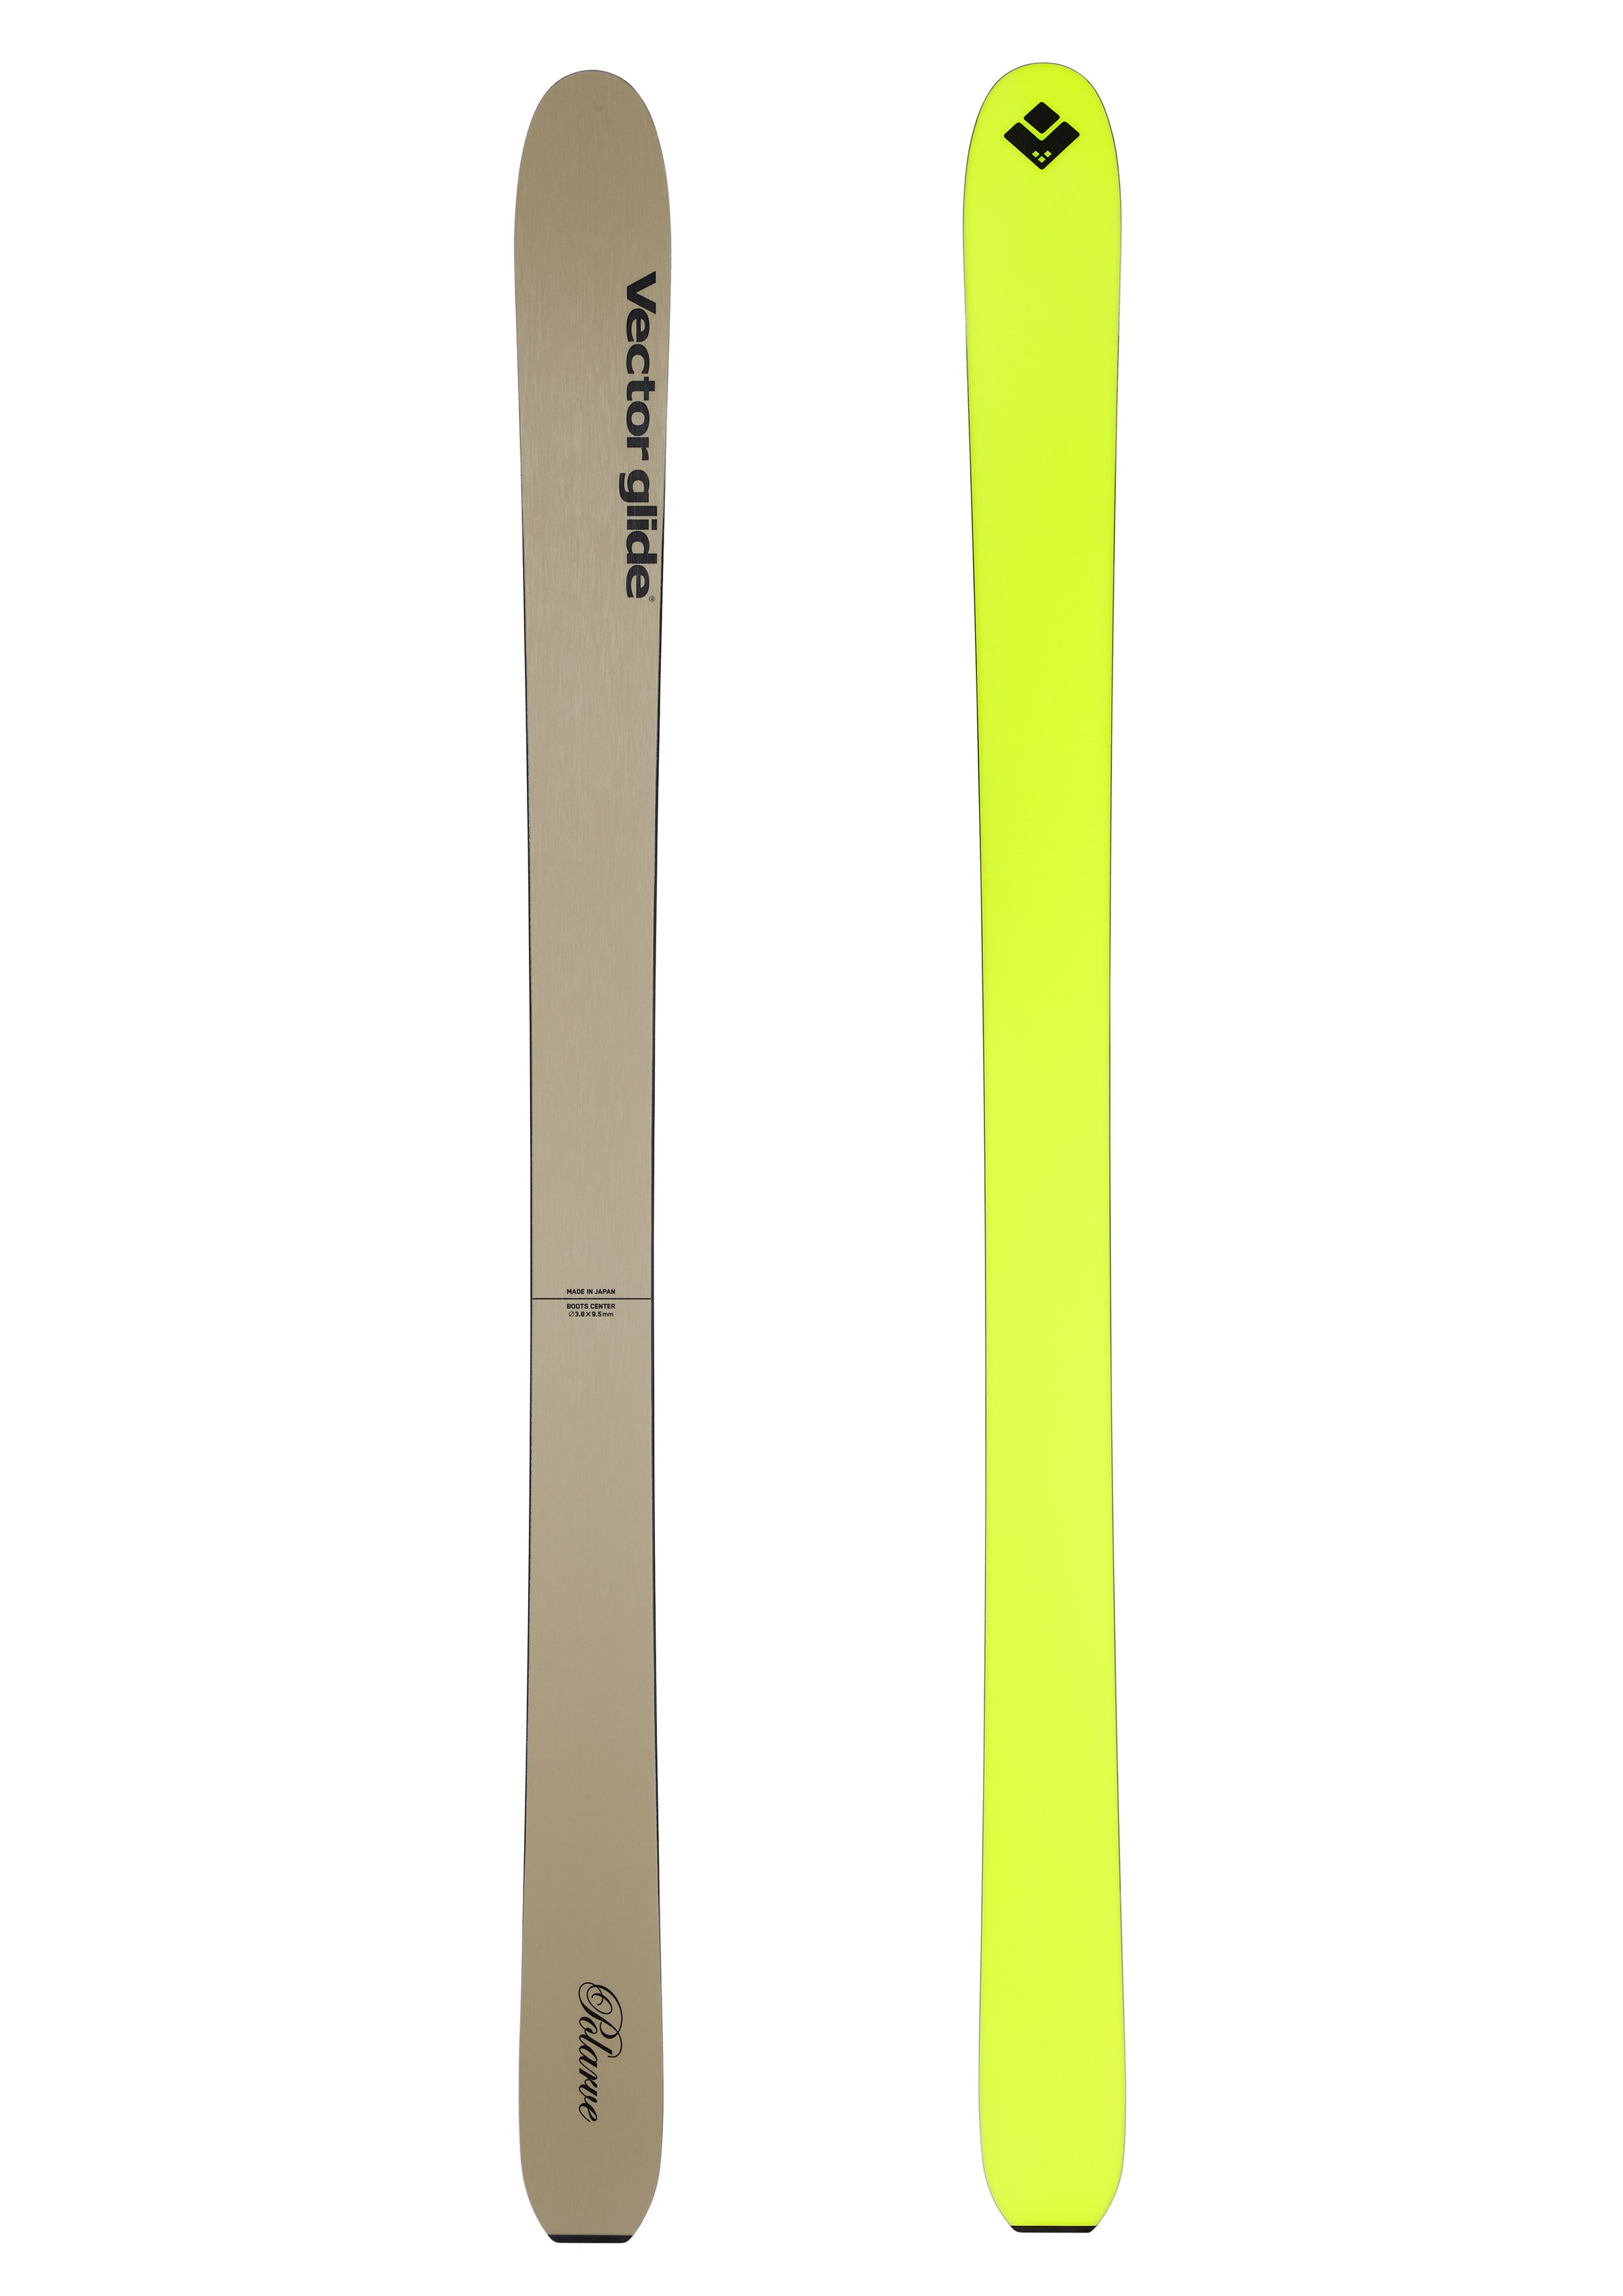 186cmVECTOR GLIDE / POLARVE STANDARD JS 186cm